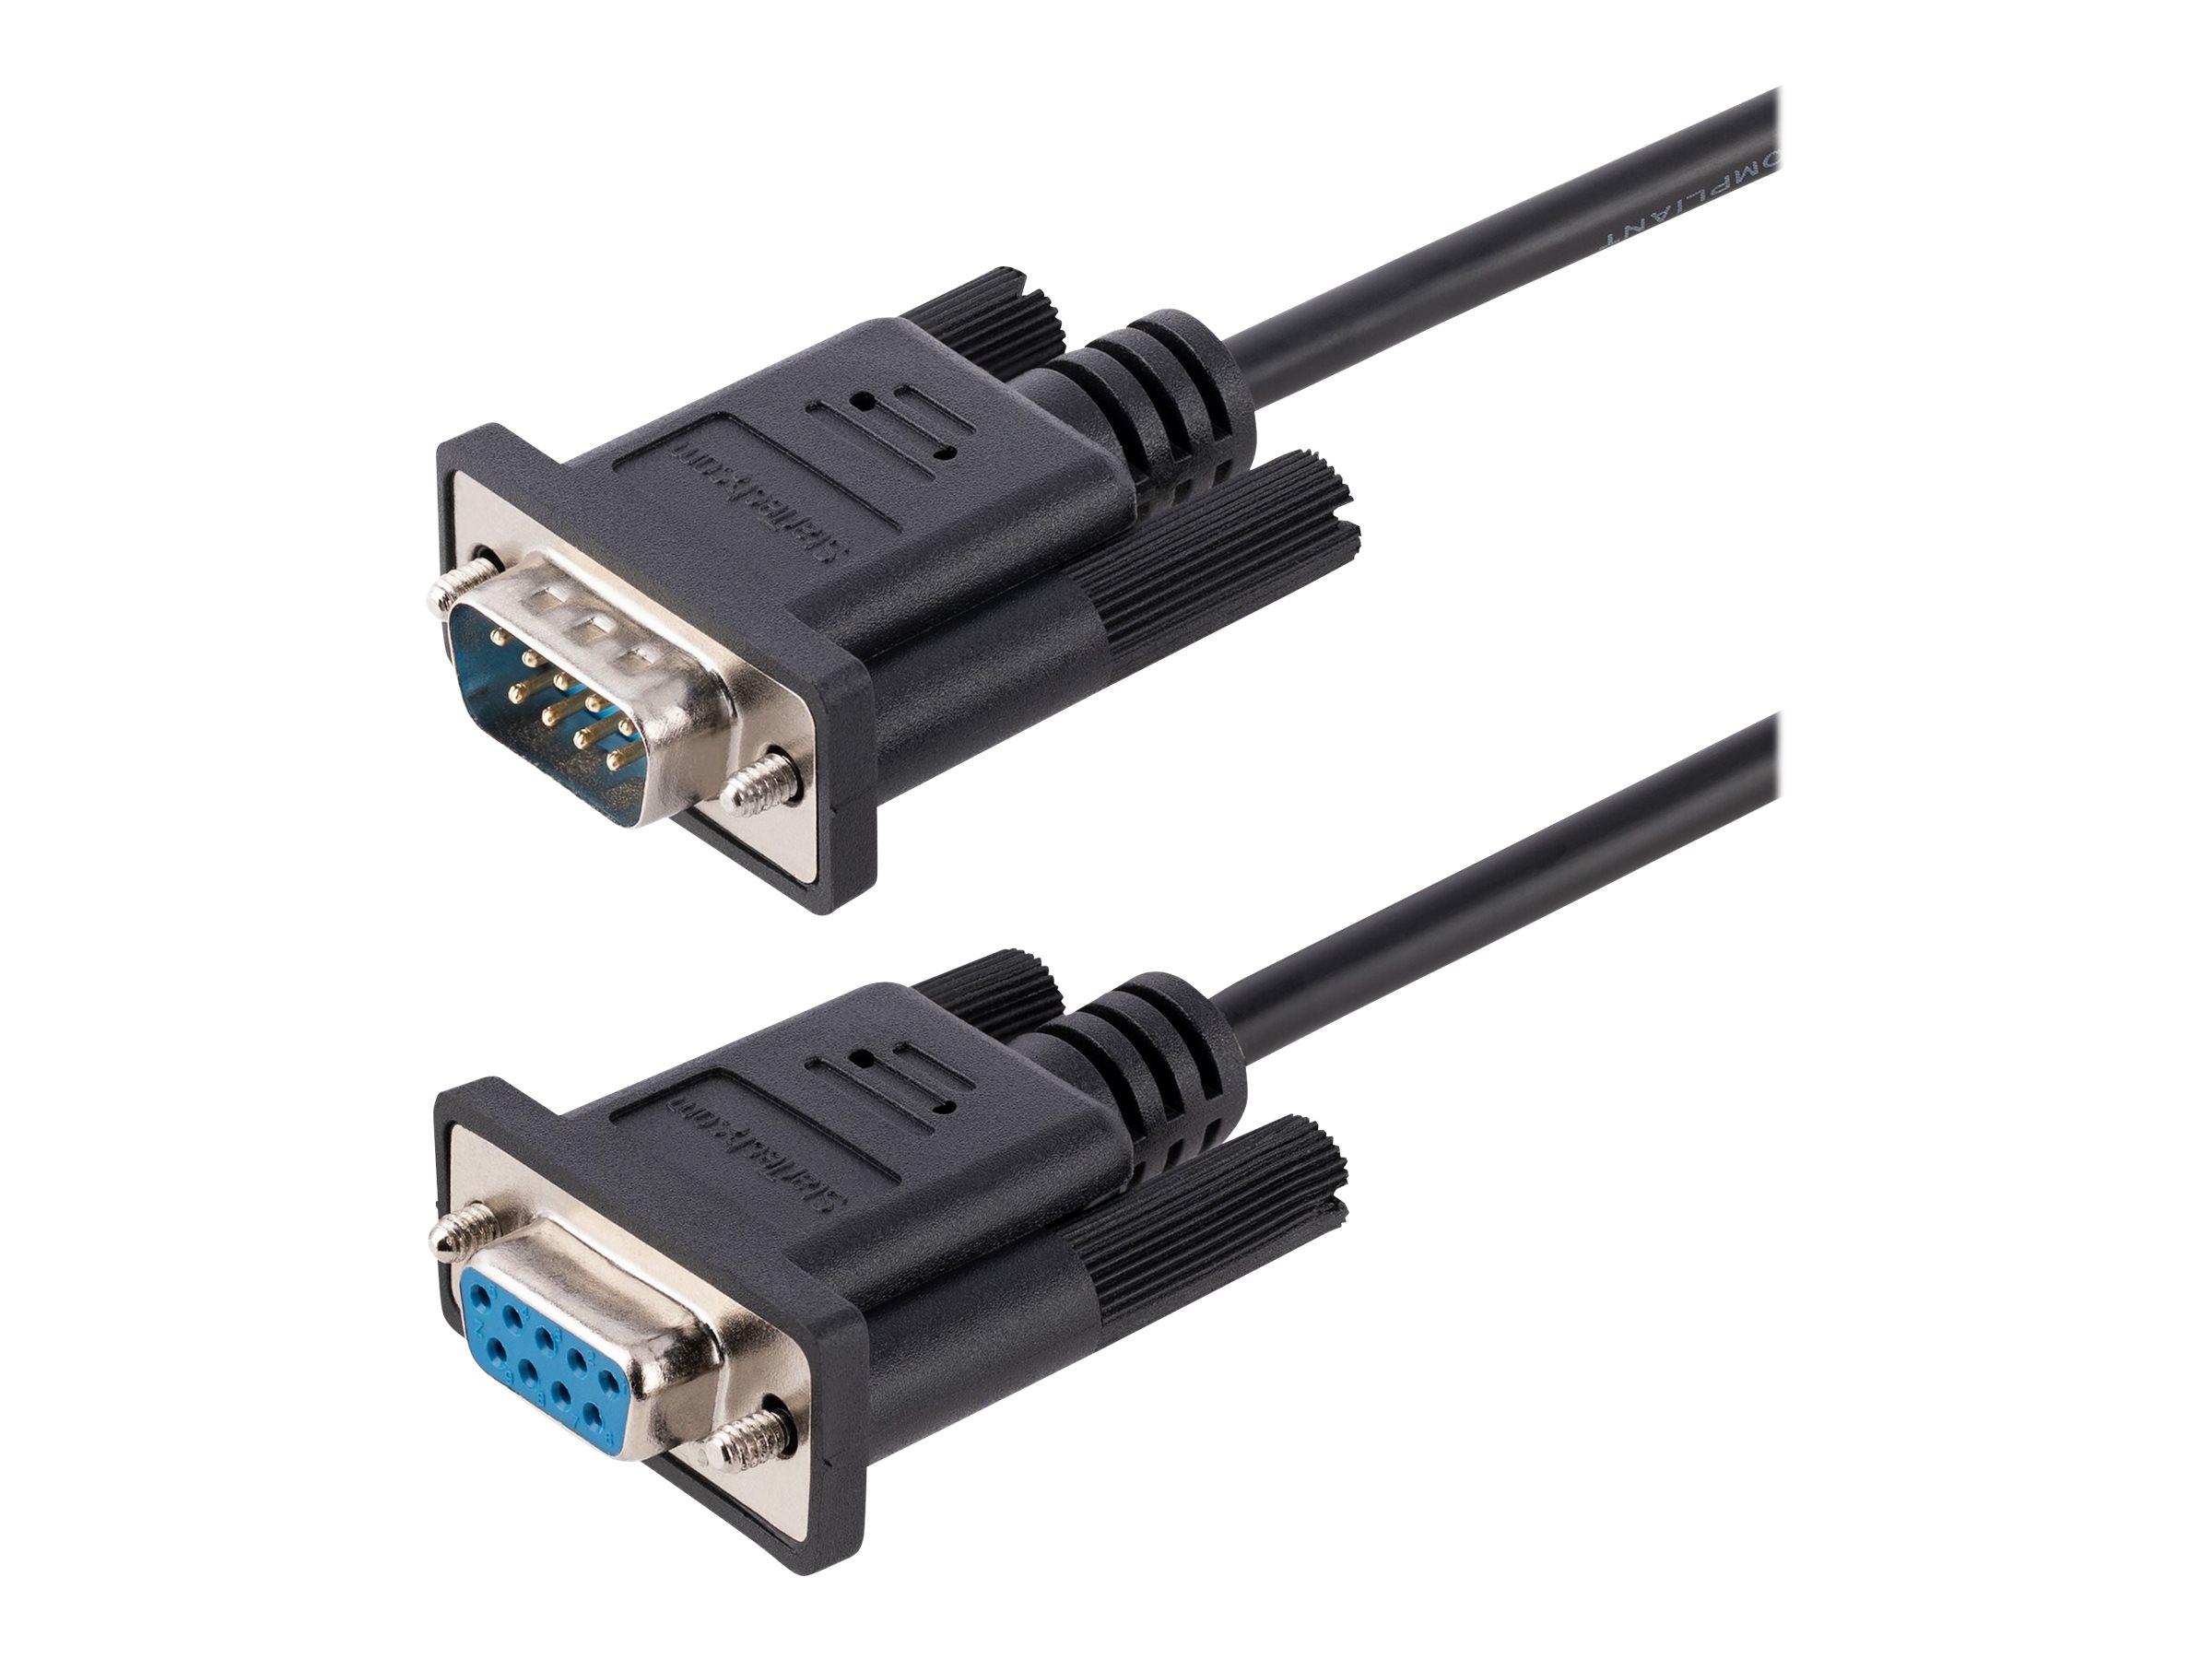 StarTech.com 3m RS232 Serial Null Modem Cable, Crossover Serial Cable w/Al-Mylar Shielding, DB9 Serial COM Port Cable Female to Male, Compatible w/DTE Devices - Tool-Less Design w/Thumbscrews, Black, F/M (9FMNM-3M-RS232-CABLE) - Câble de modem nul - DB-9 (F) pour DB-9 (M) - 3 m - moulé, vis moletées, franchissement - noir - 9FMNM-3M-RS232-CABLE - Câbles série